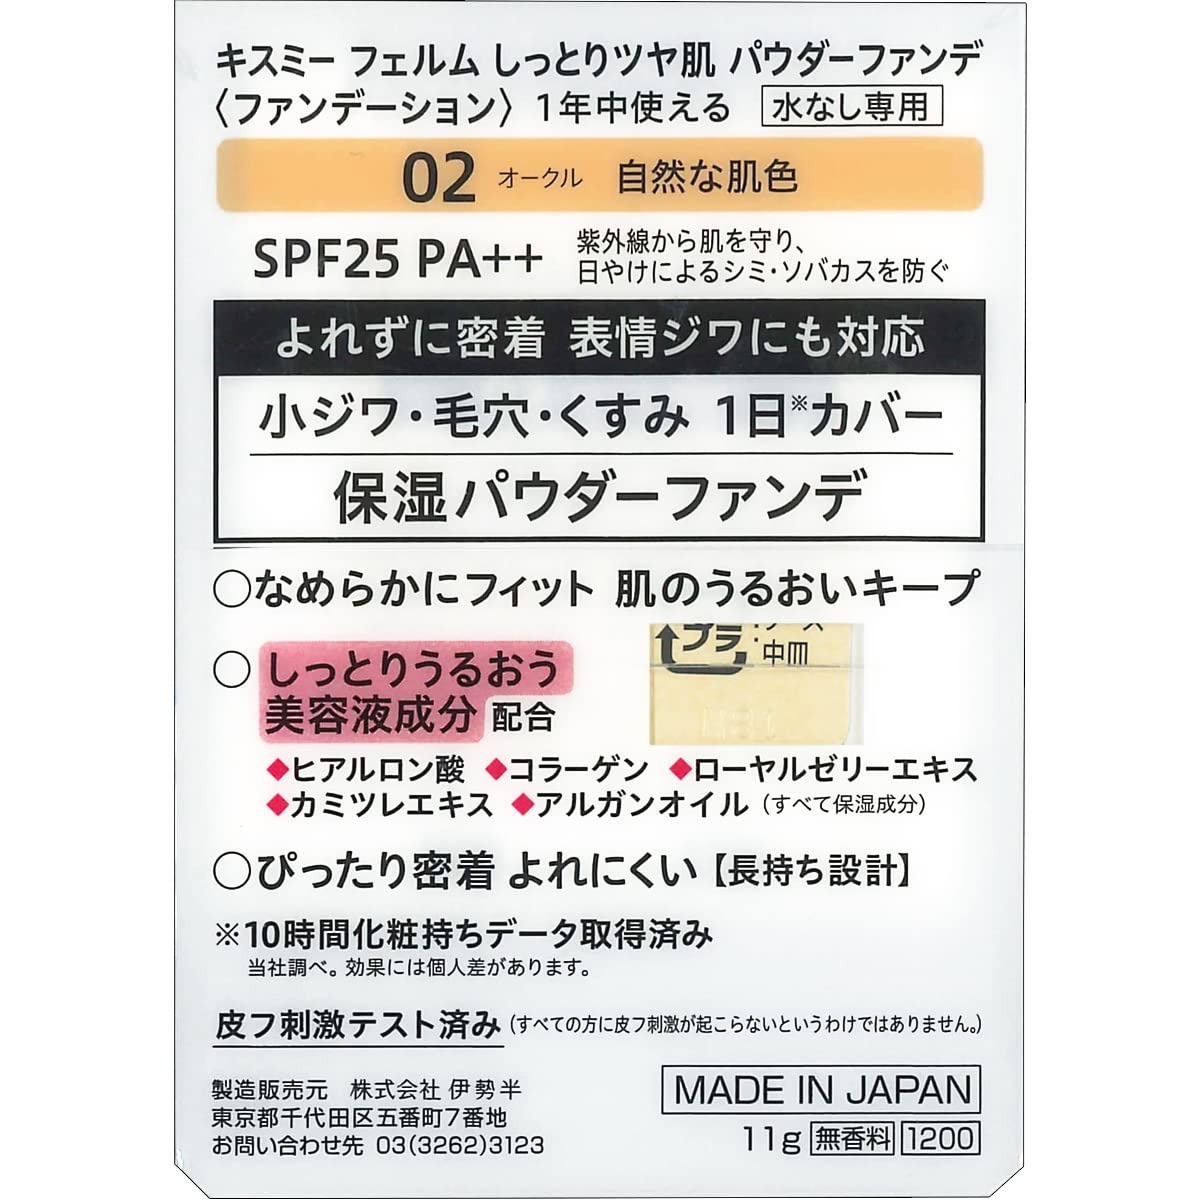 Orbis Japan 4 Tones Styling Eyes Brick Brown Eye Shadow 1X1